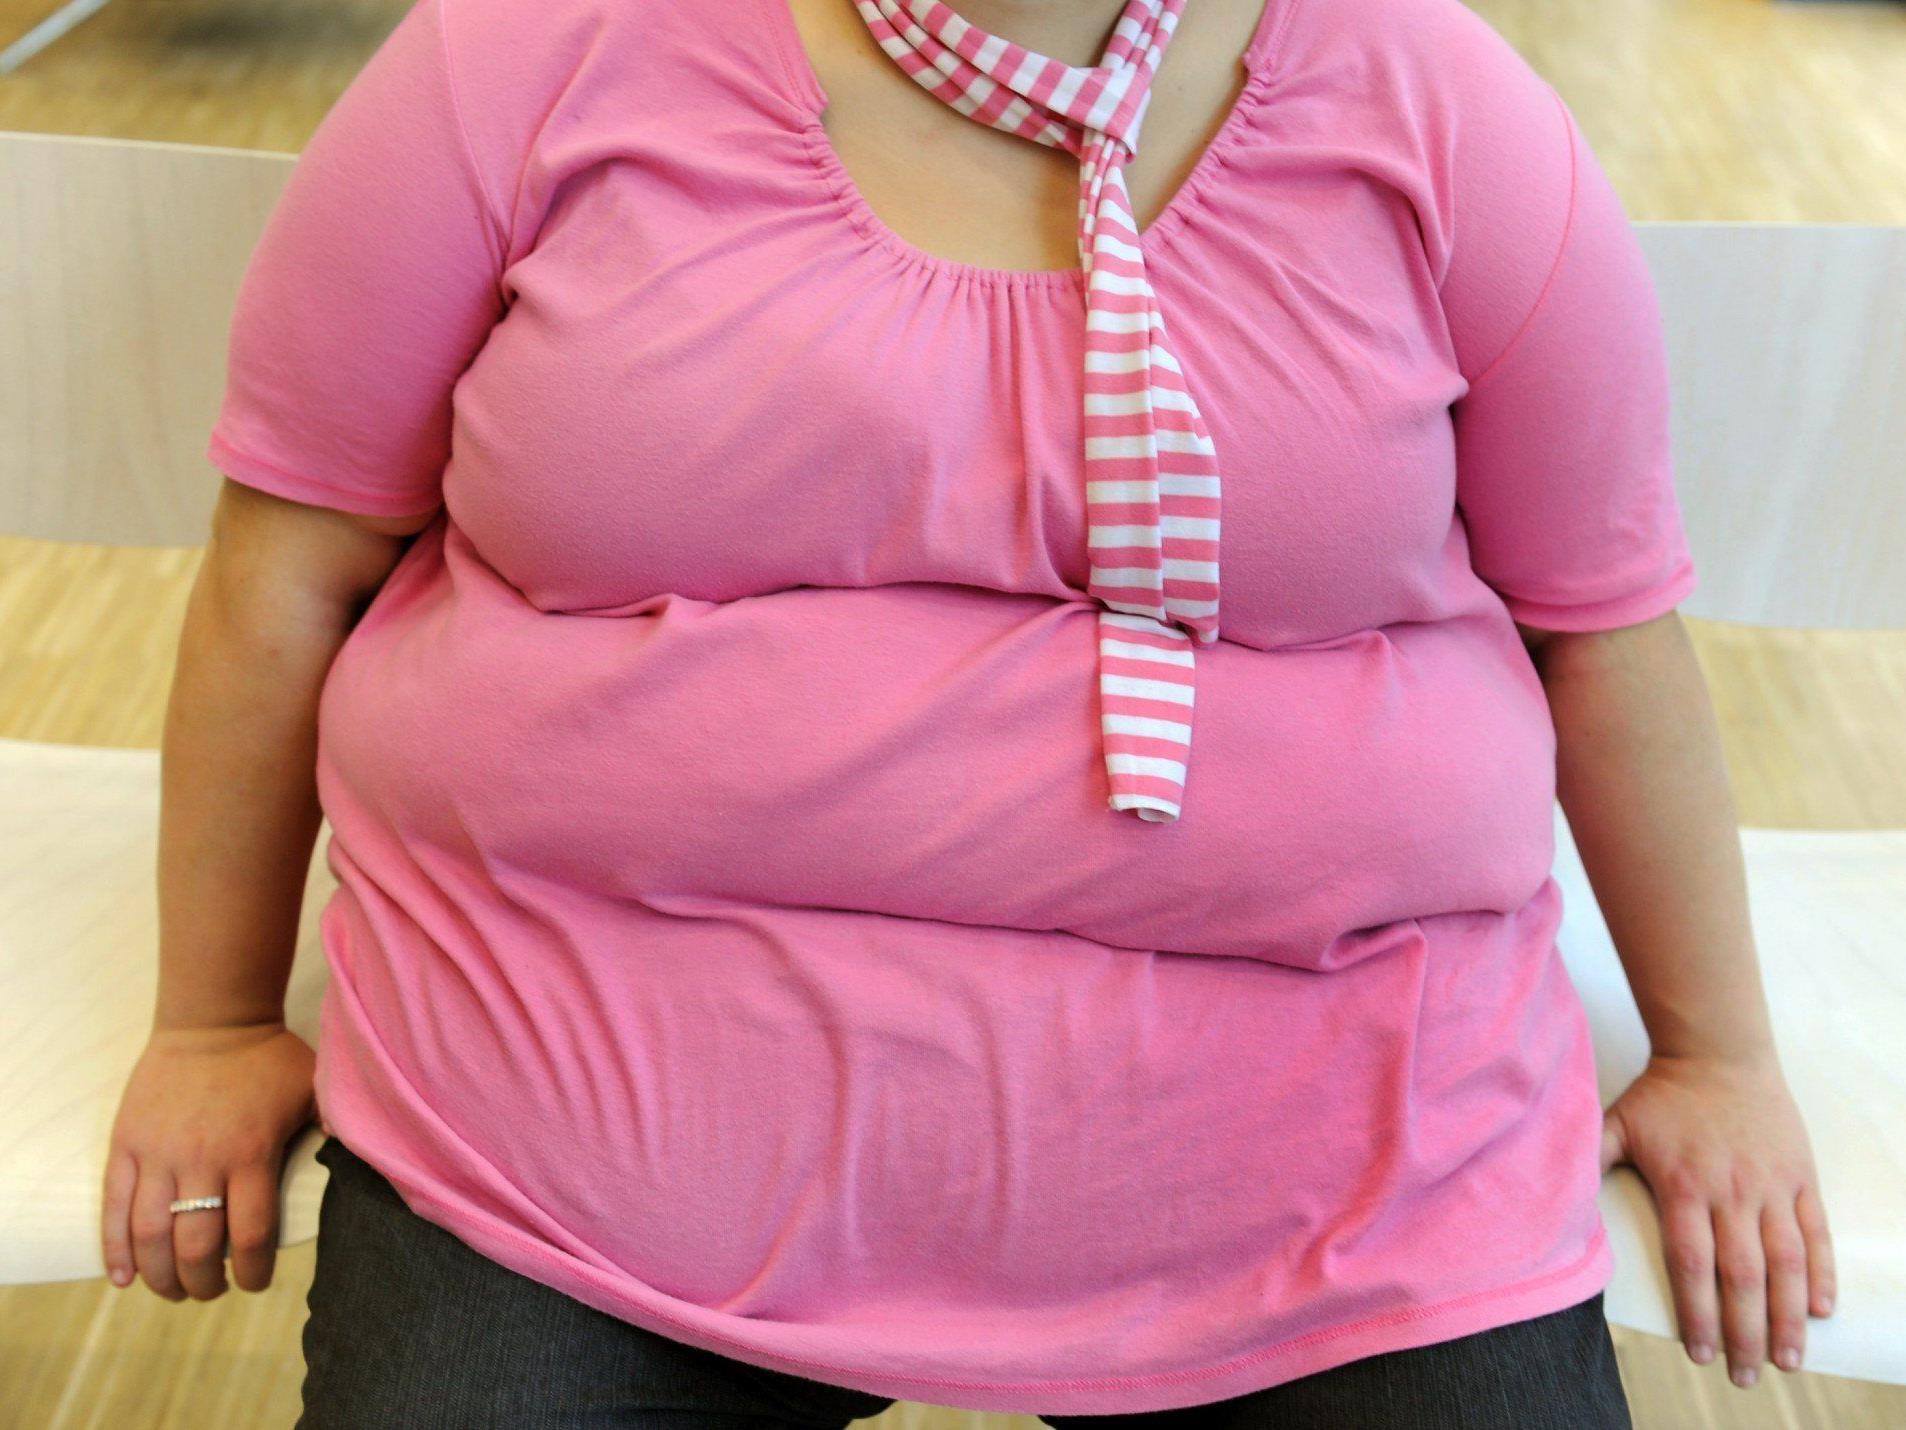 Übergewichtige Kinder können früher in die Pubertät kommen.